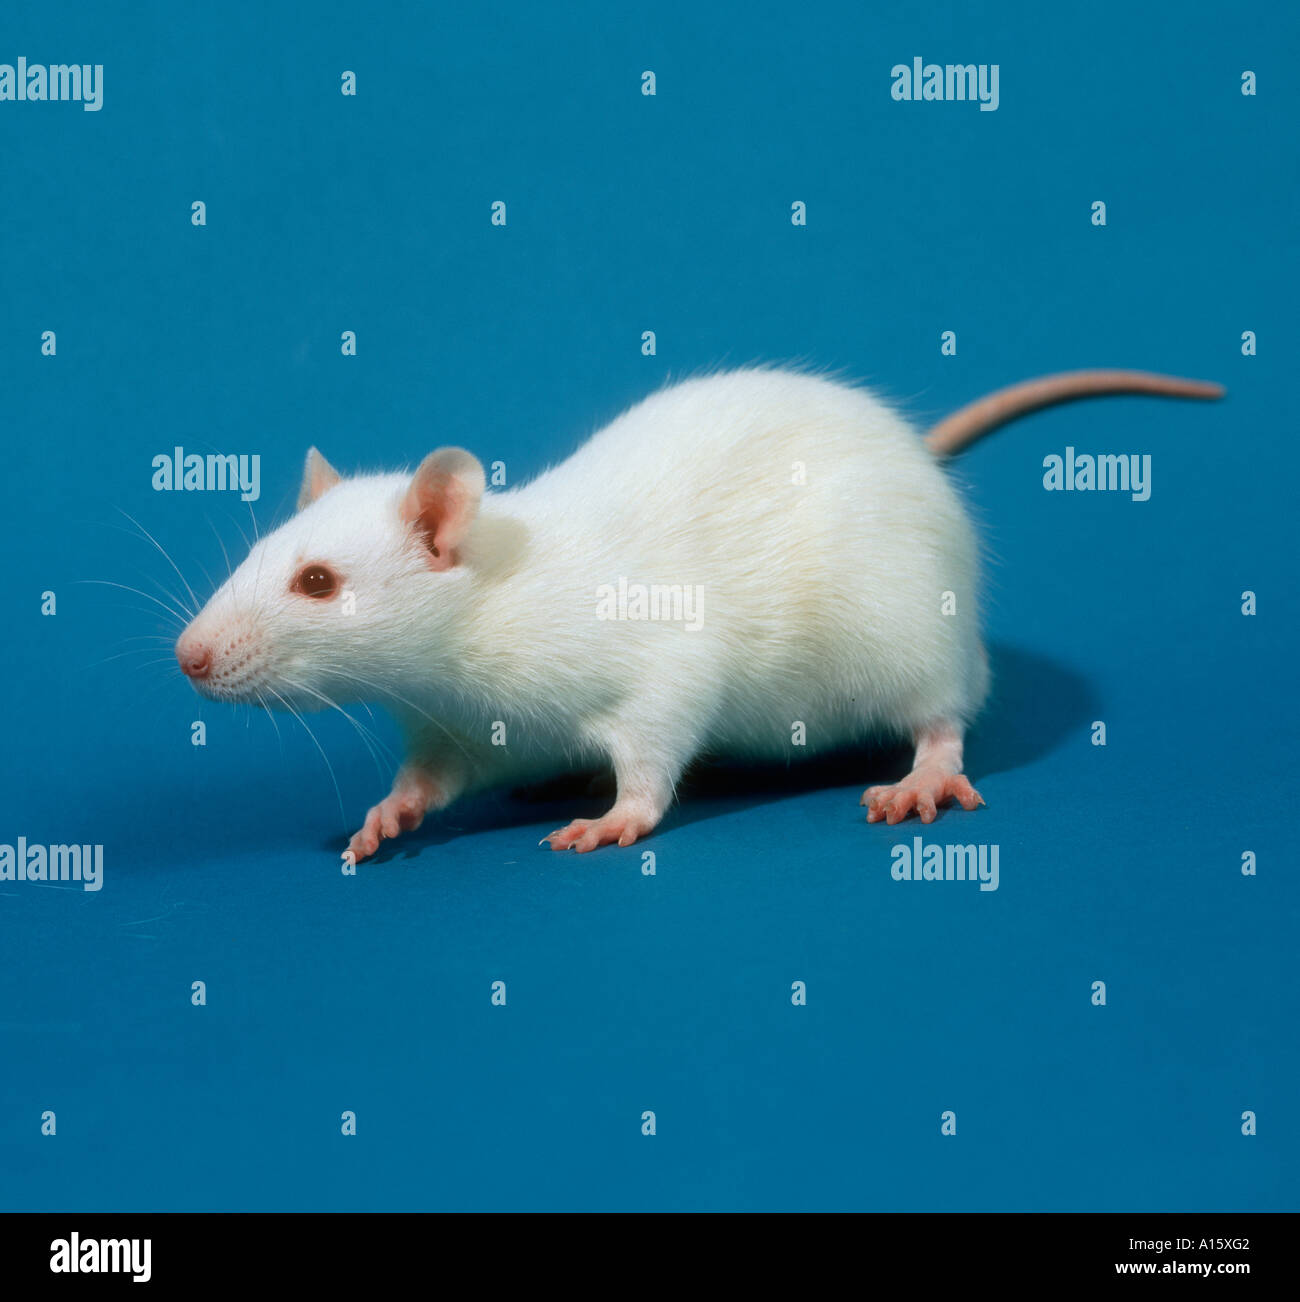 Laboratoire Blanc race rat Sprague Dawley produites pour l'étude de toxicologie Banque D'Images